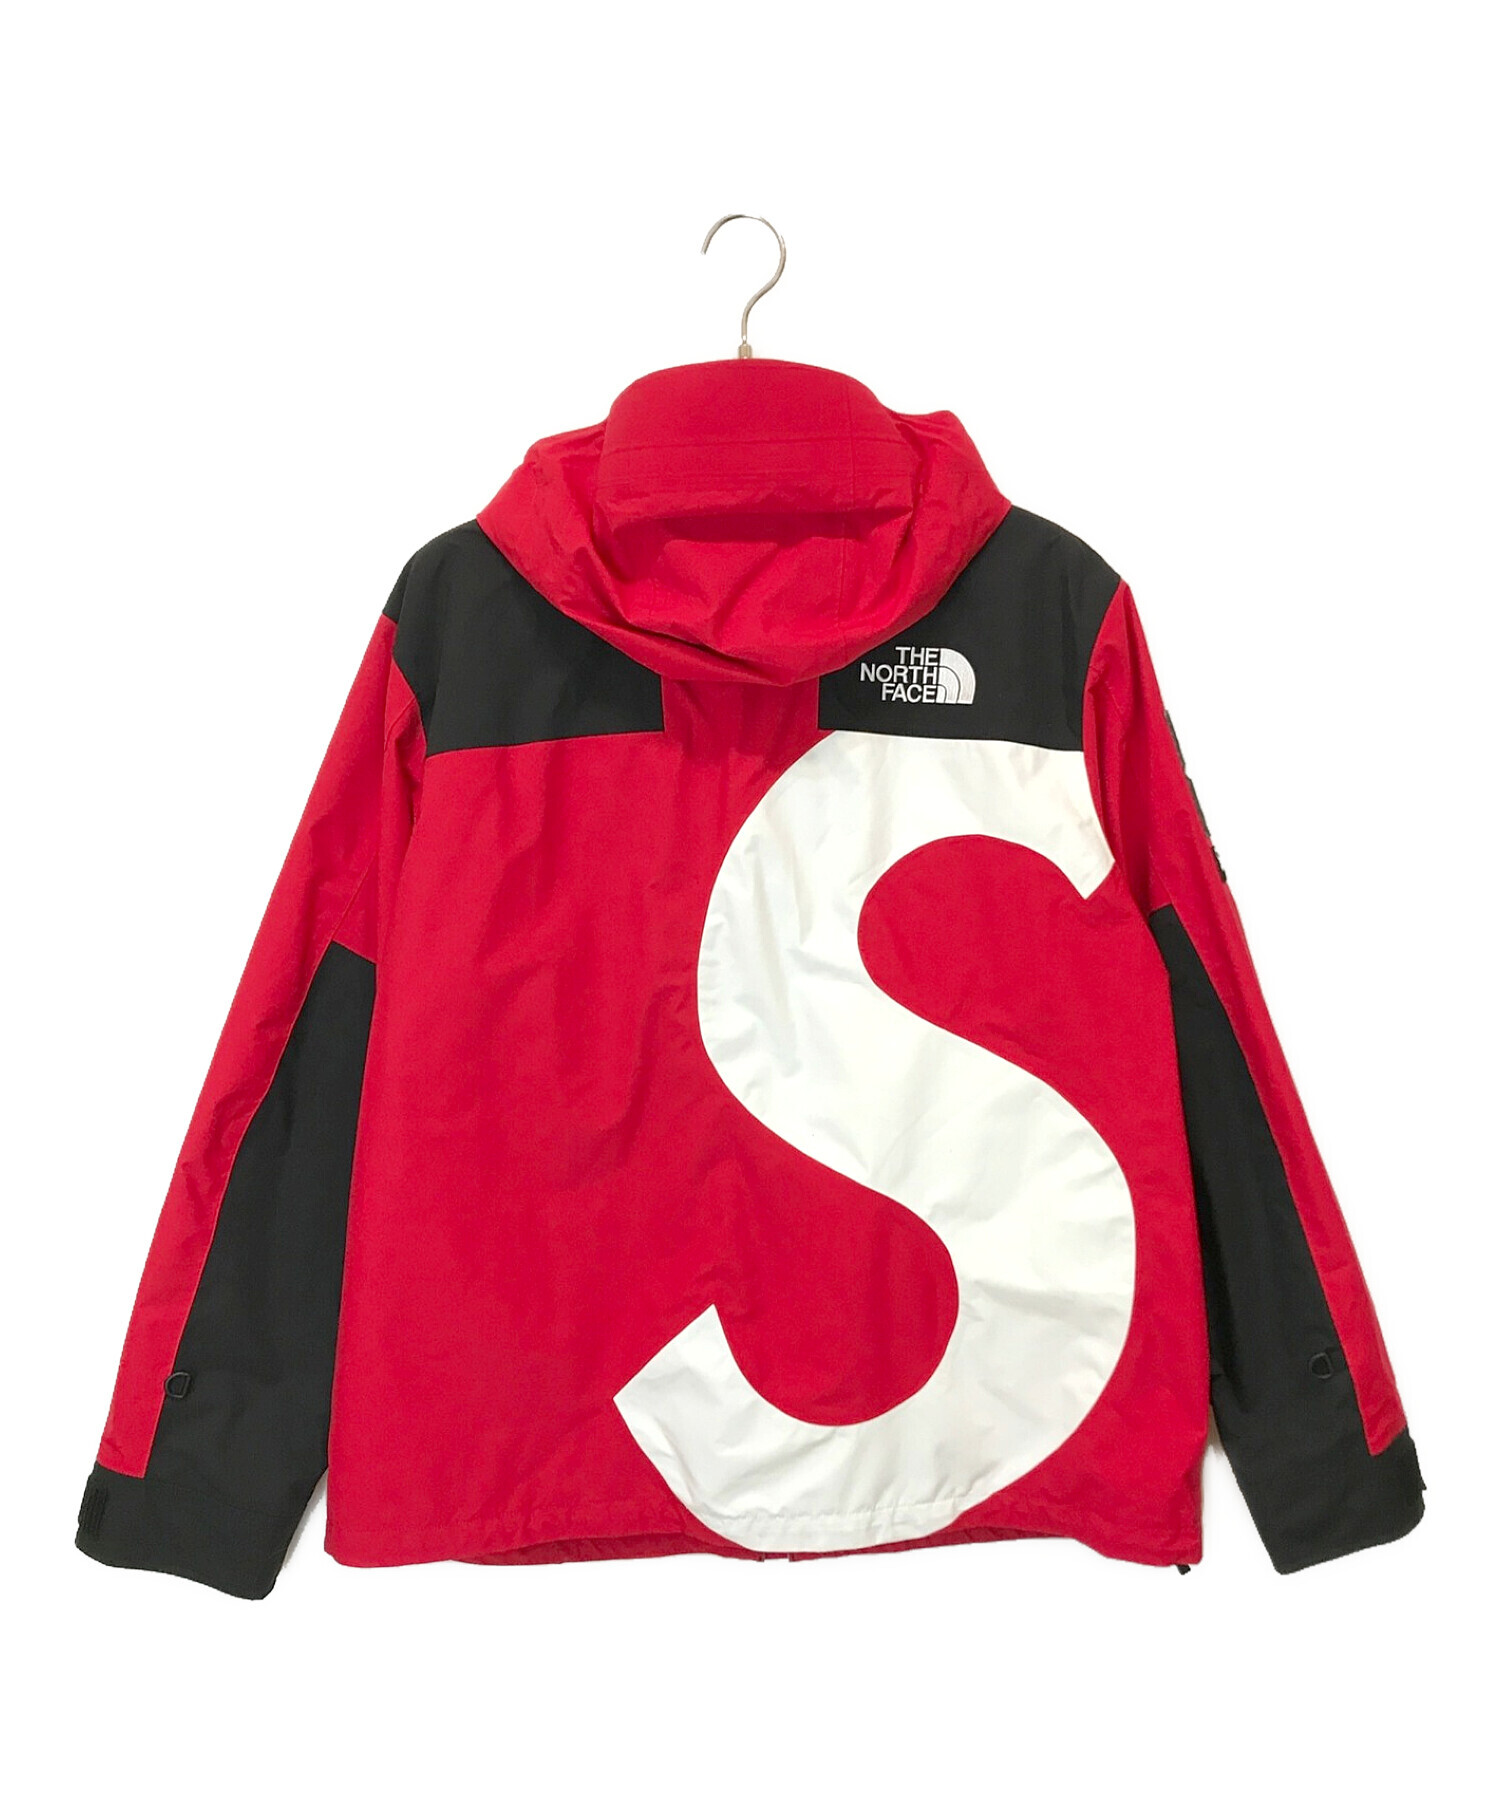 supreme シュプリーム Mountain Jacket RED S